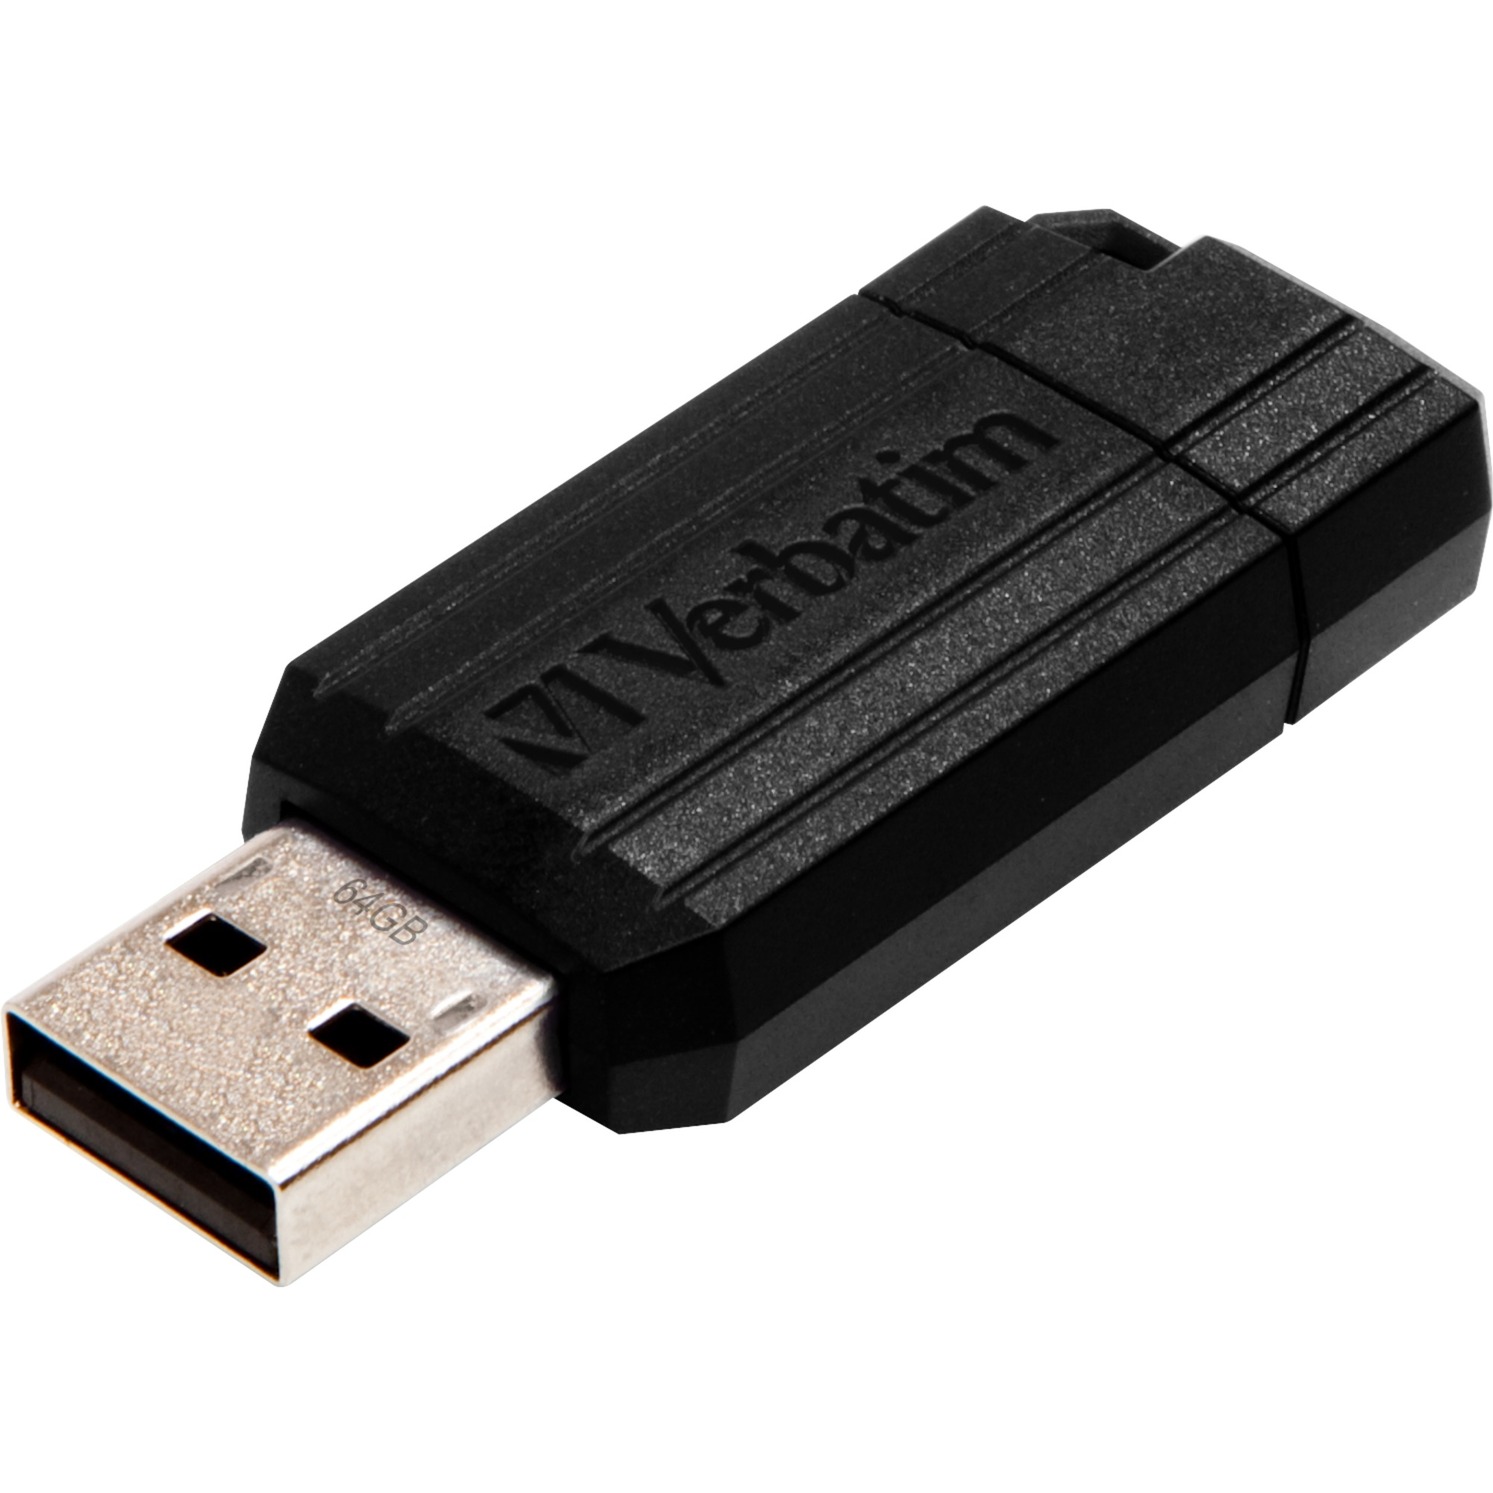 PinStripe pamięć USB 32 GB 2.0/3.0 (3.1 Gen 1) Złącze USB typu A Czarny, Nośnik Pendrive USB